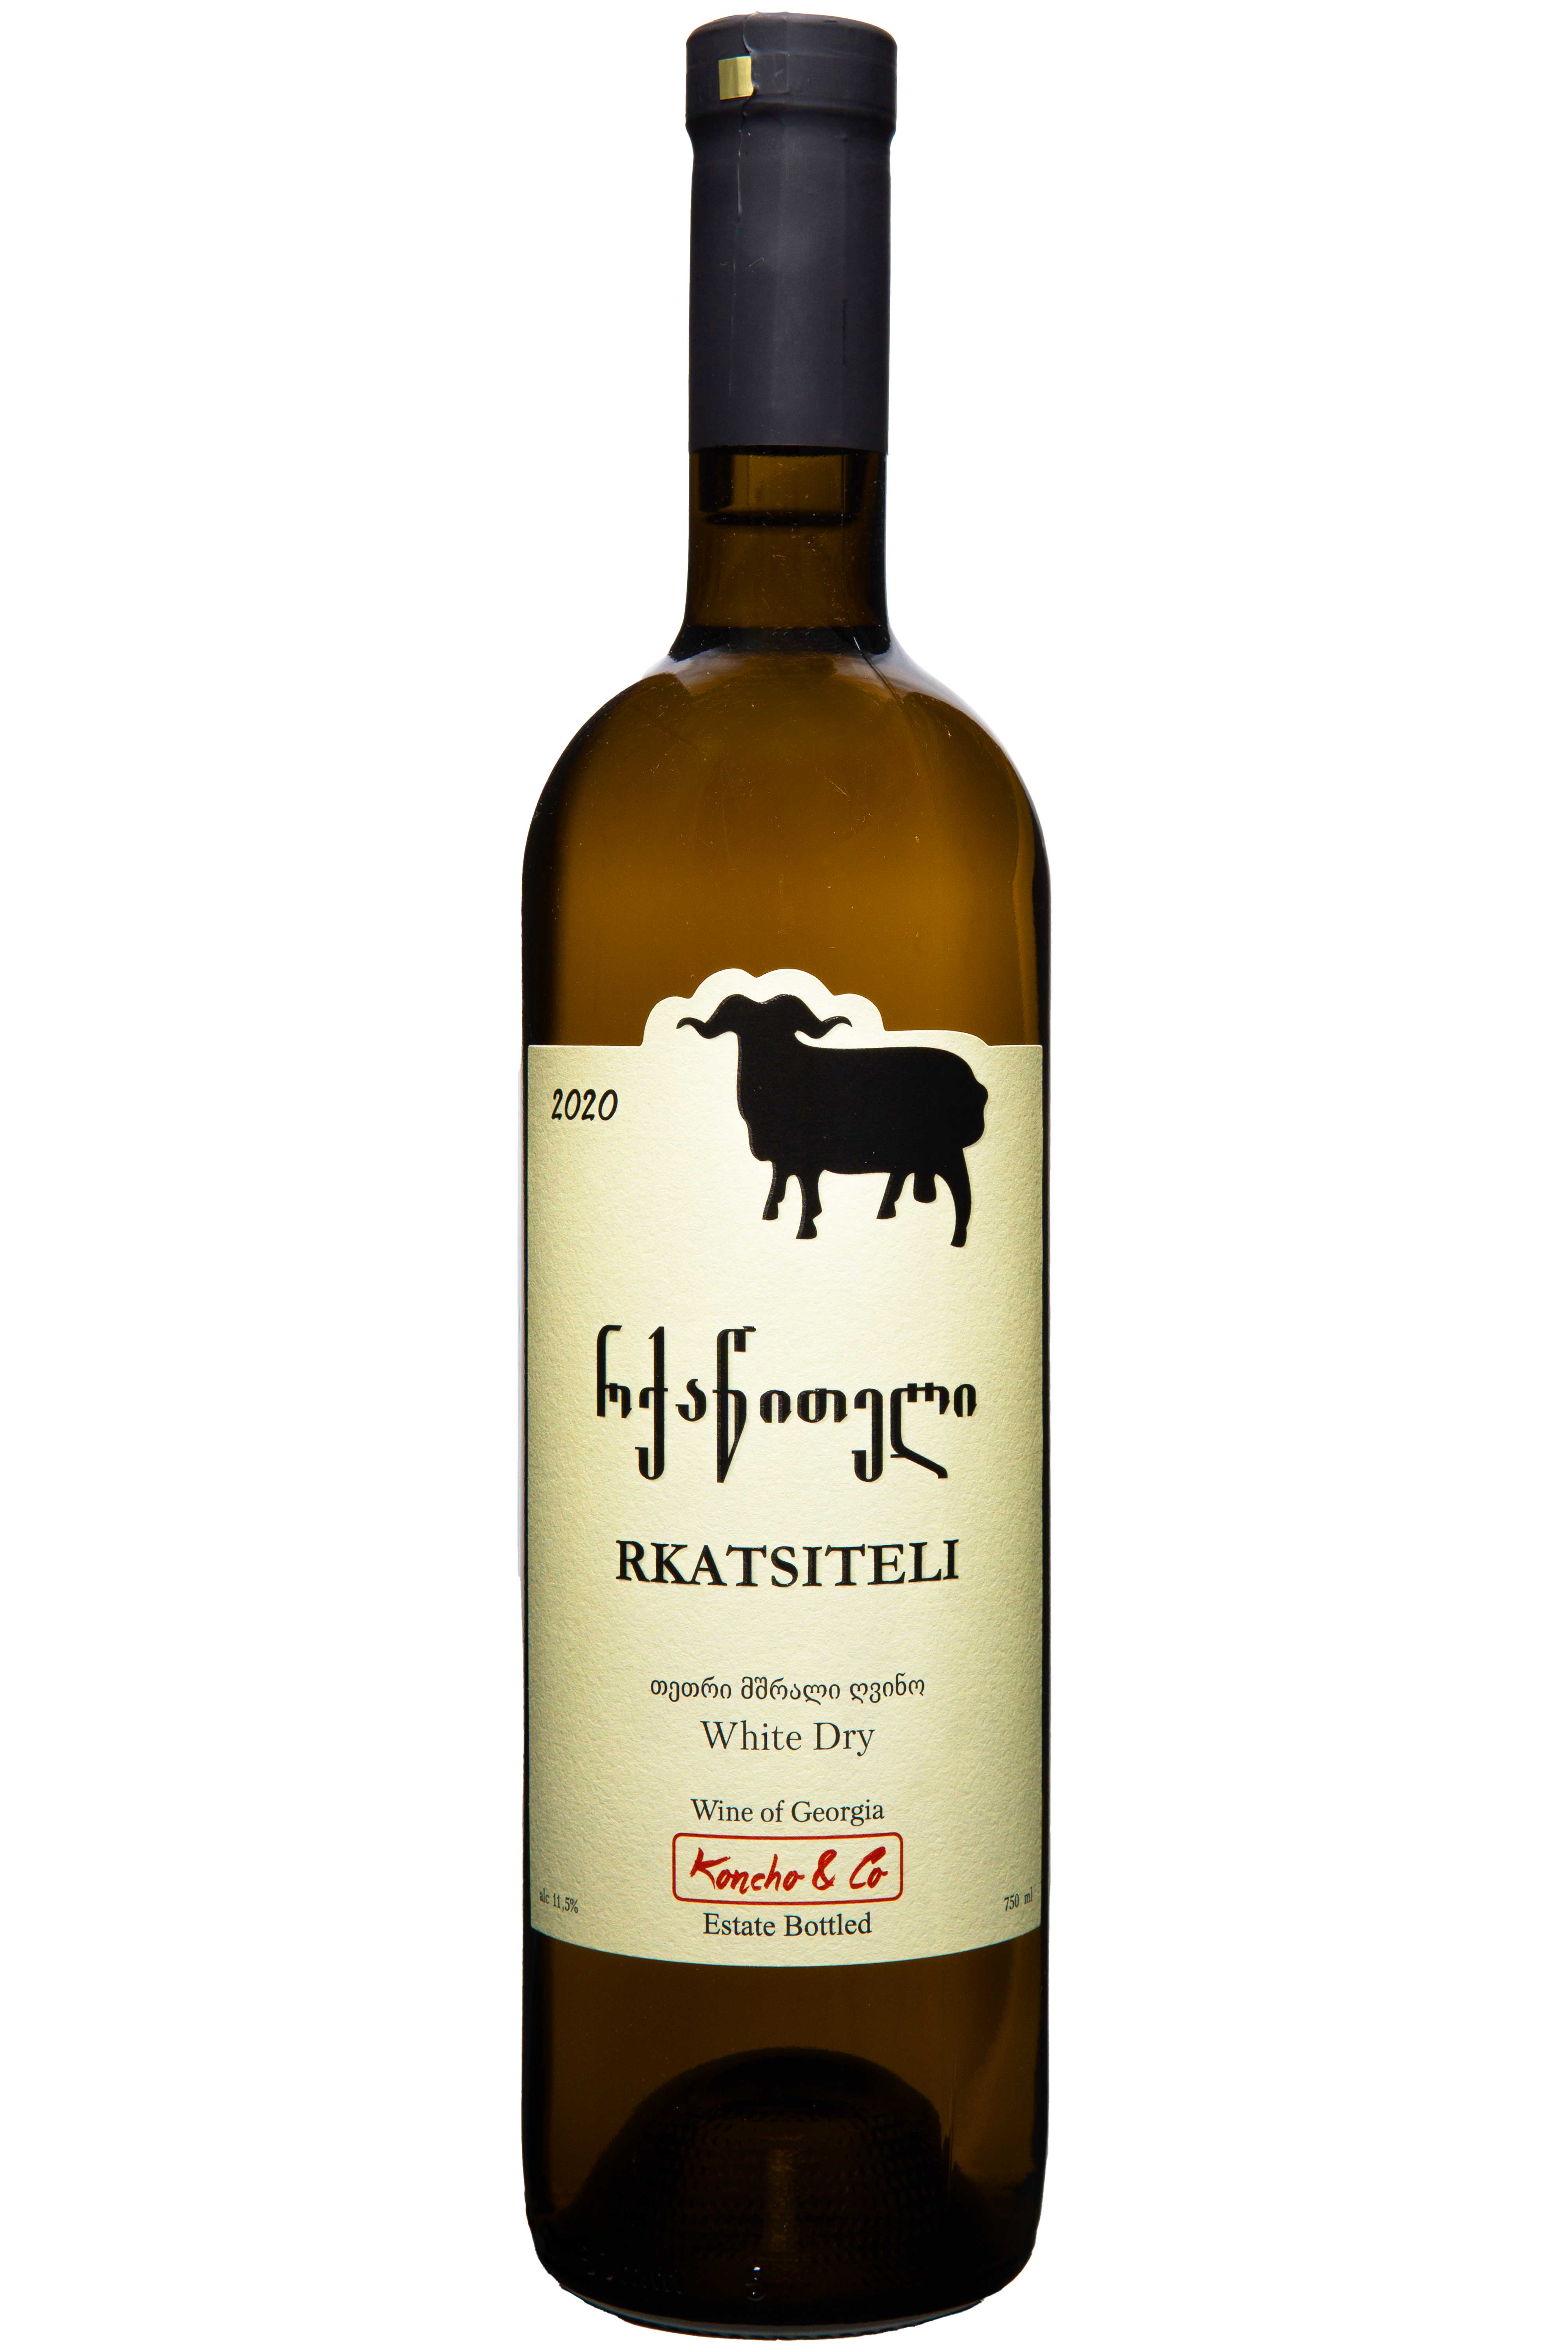 Flasche von Koncho & Co. Rkatsiteli 2021, knackig und aromatisch, traditioneller georgischer trockener Weißwein